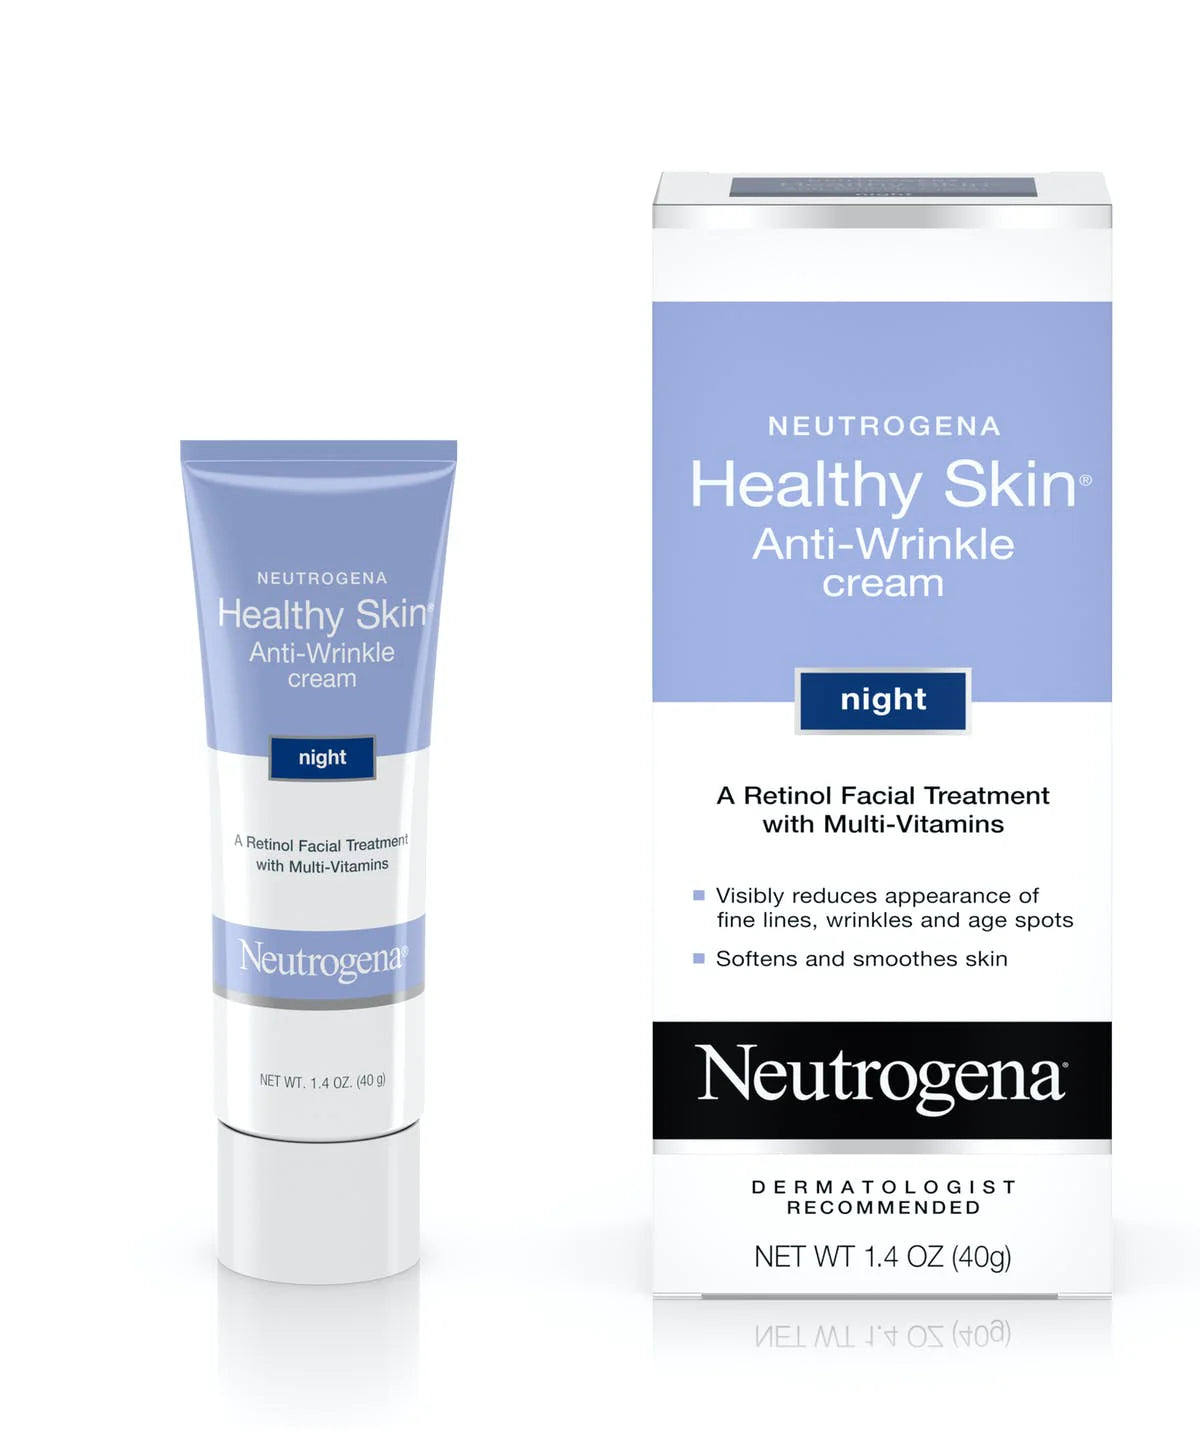 Age-defying Neutrogena Anti-Wrinkle Cream - Smooth, Youthful Skin, 40g